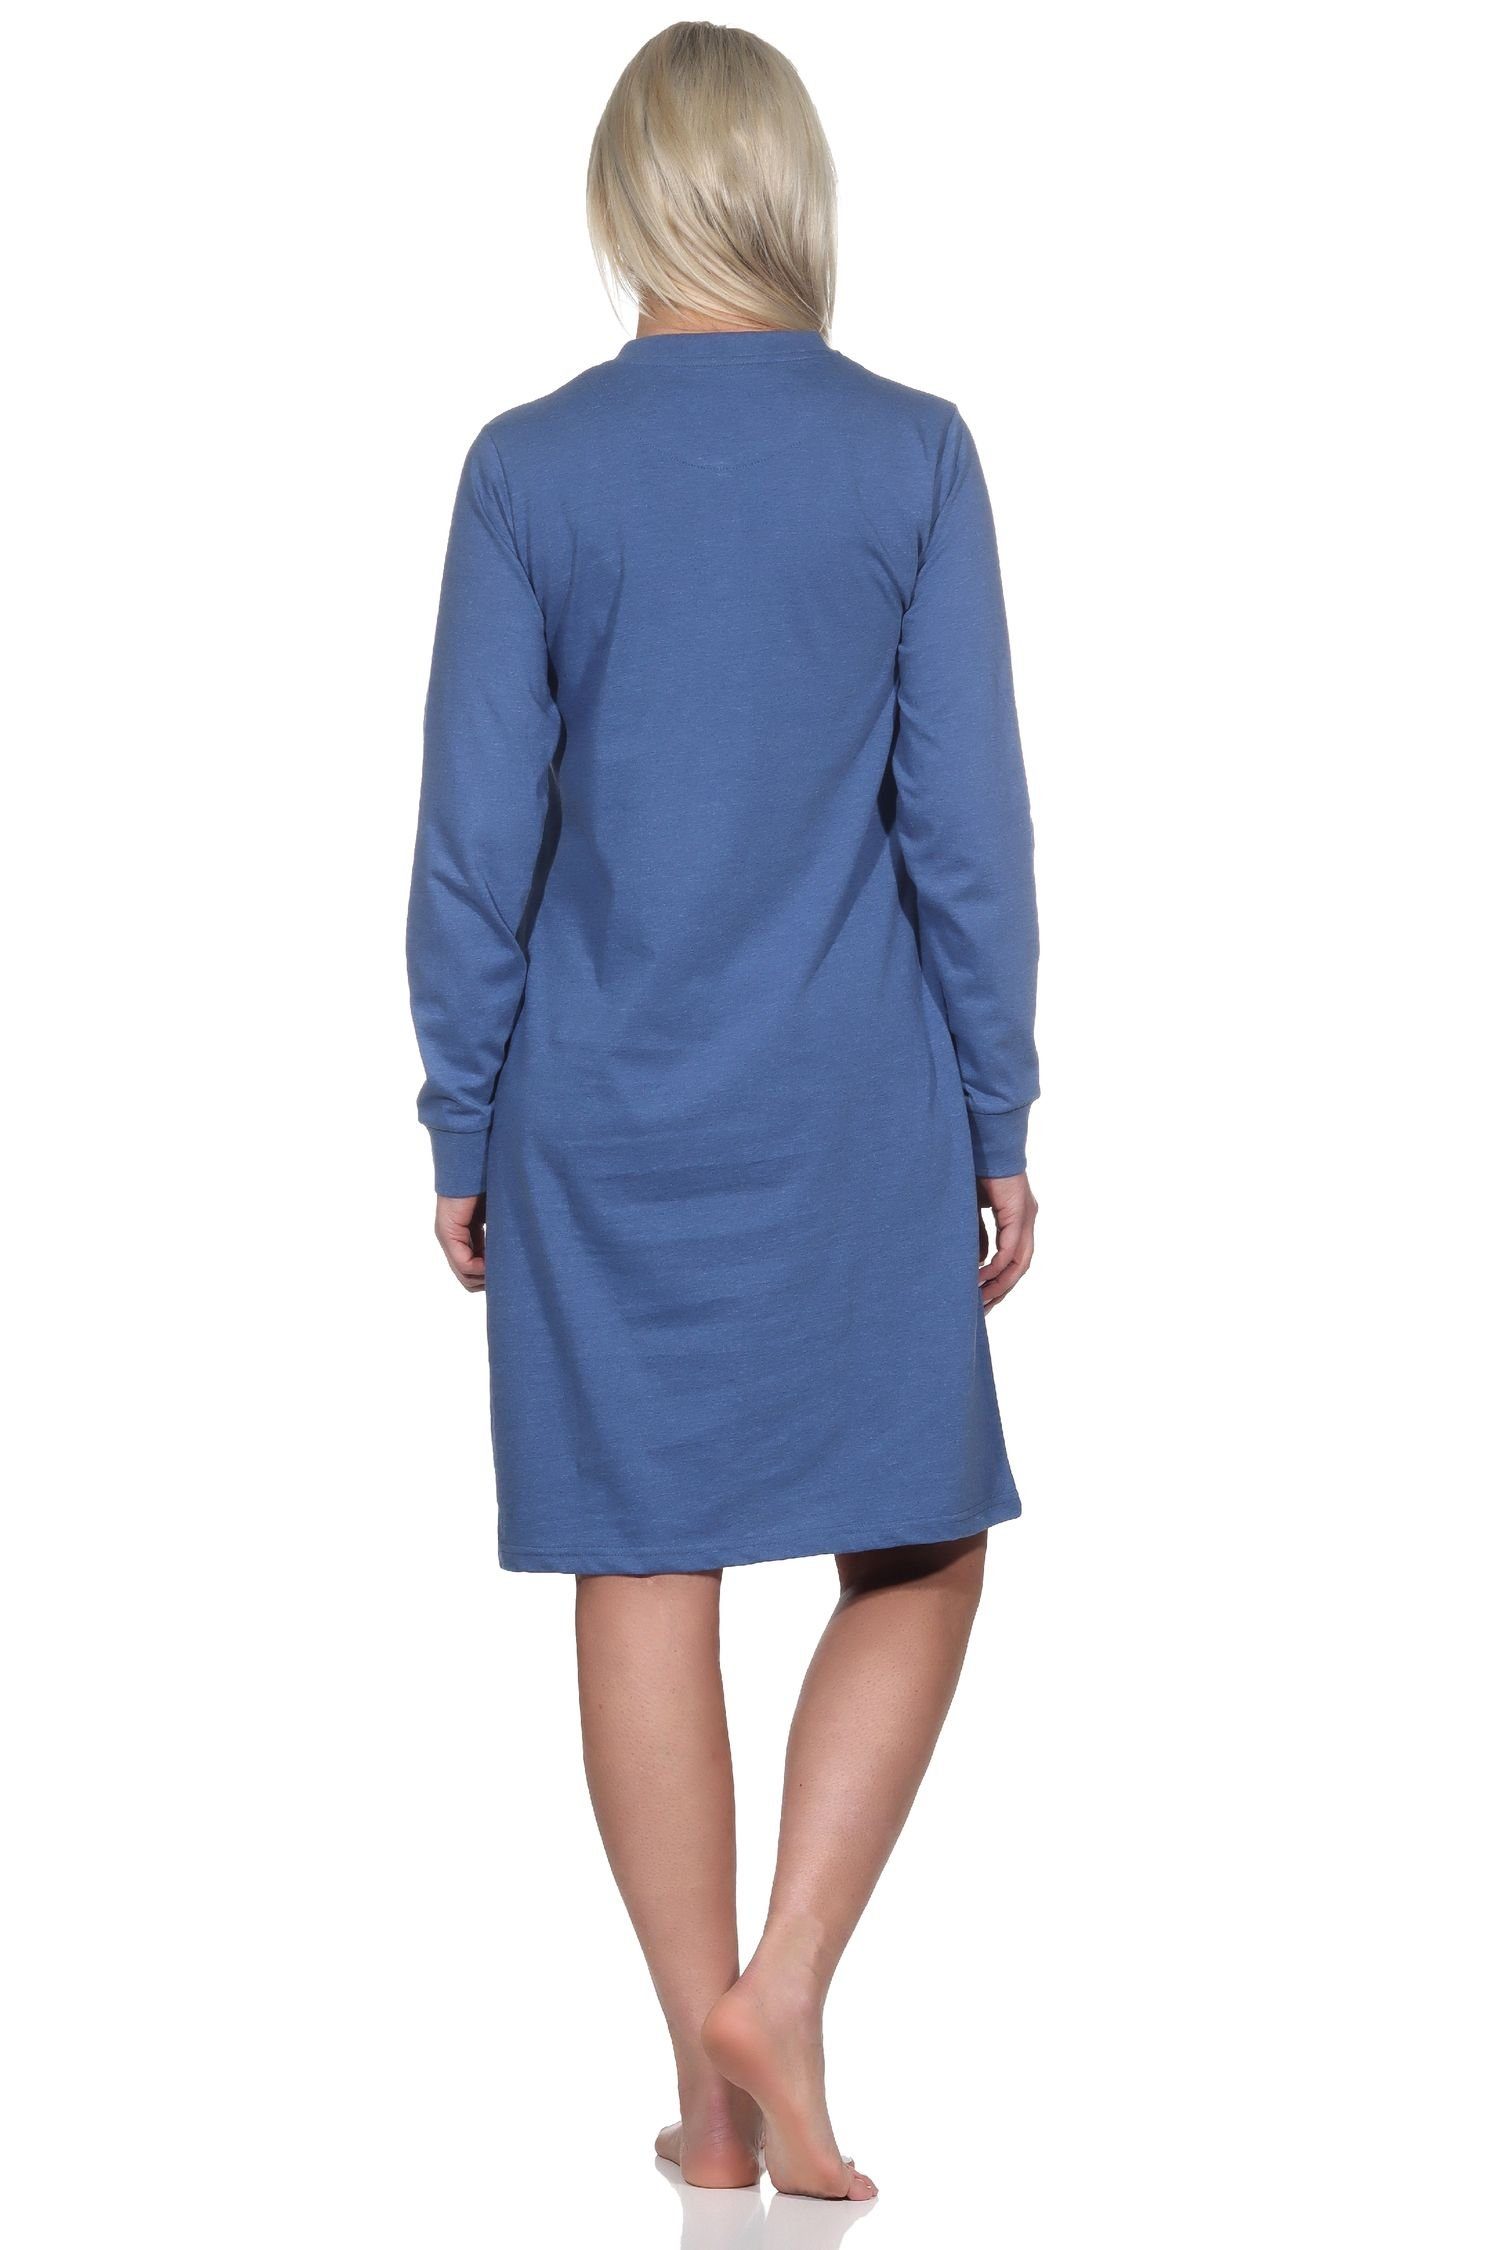 Normann Übergrössen in Nachthemd - blau-mel. auch Damen langarm Normann Nachthemd mit Bündchen